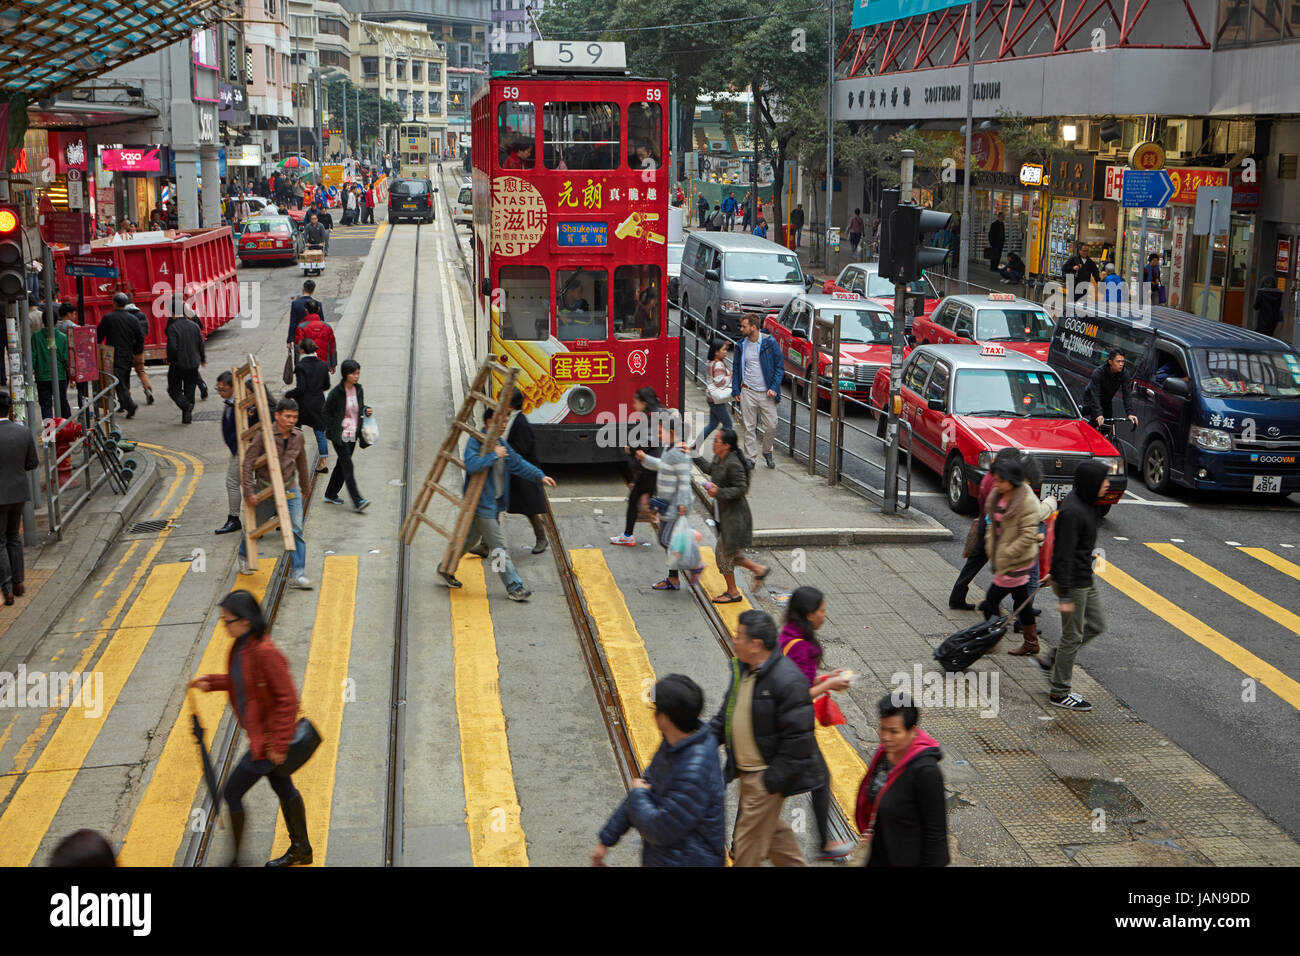 Pedestrians, traffic and trams, Johnston Road, Wan Chai, Hong Kong Island, Hong Kong, China Stock Photo